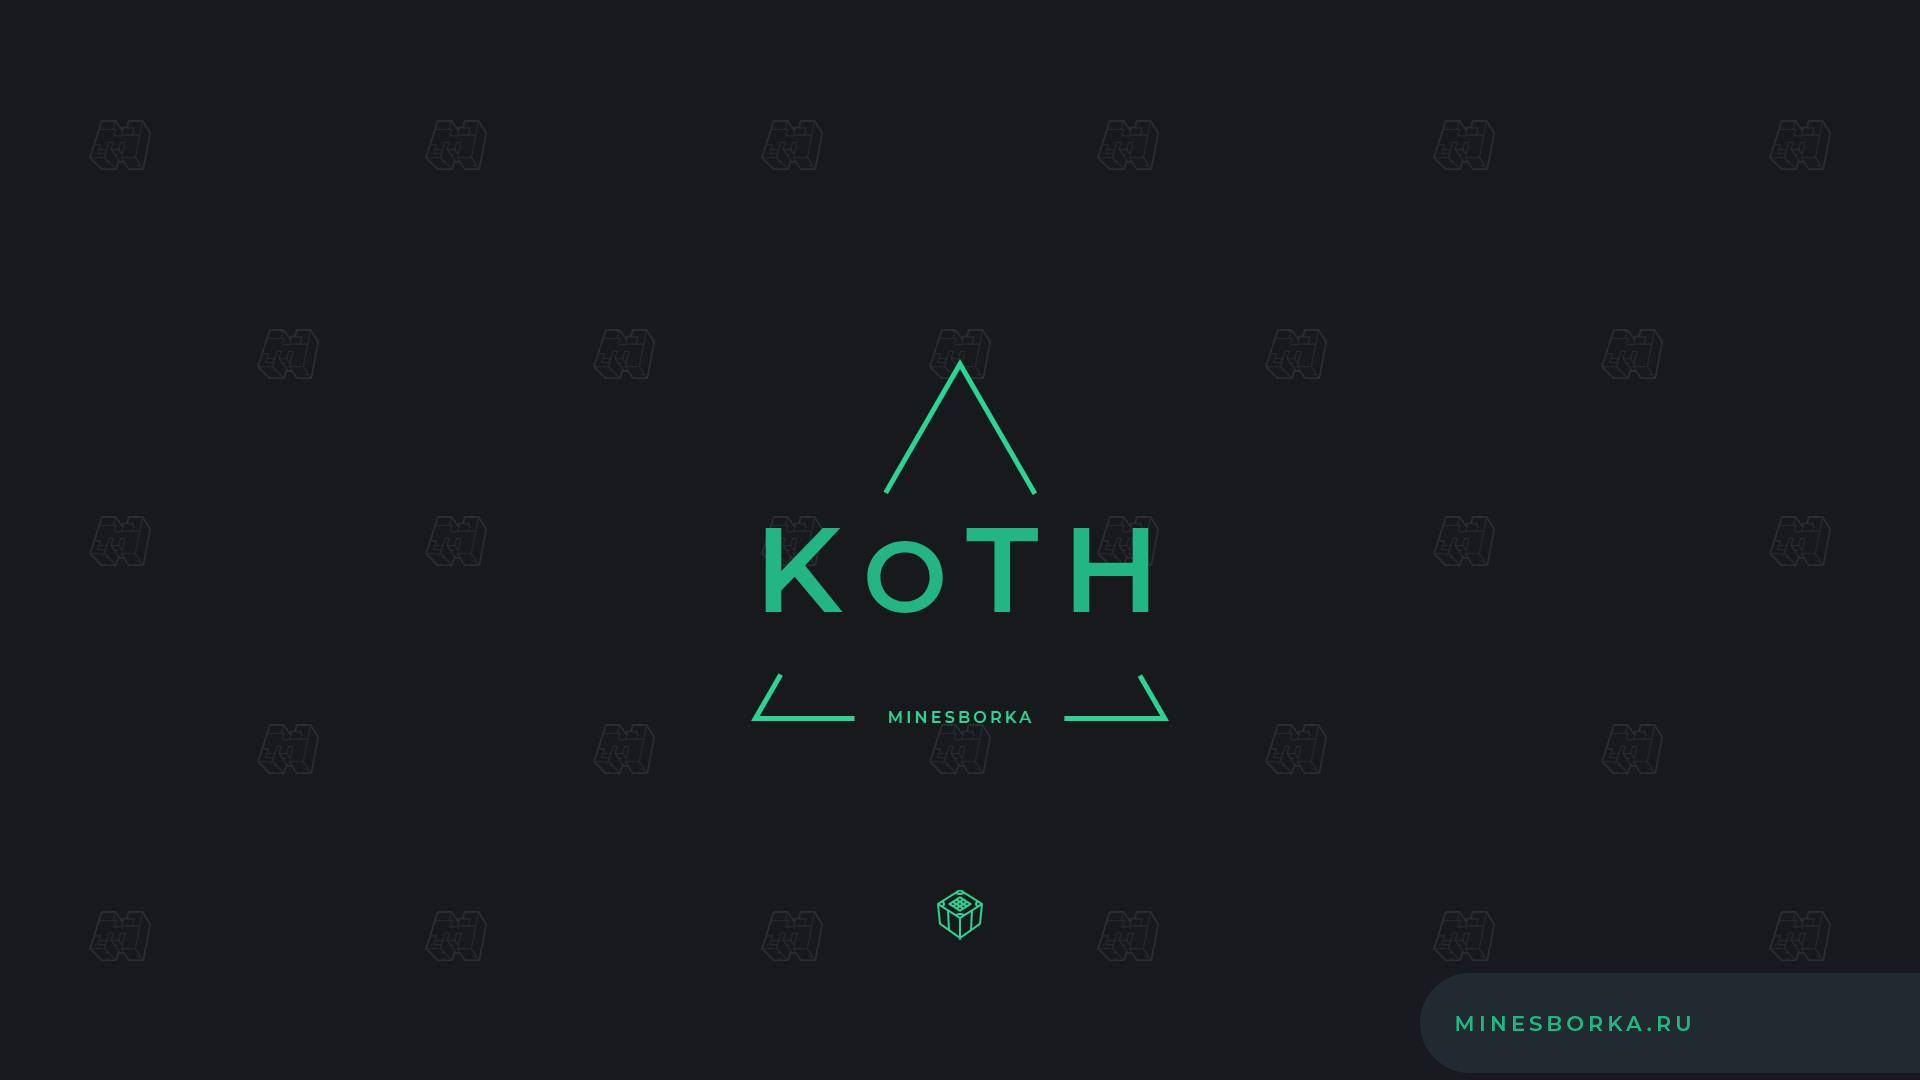 KOTH (King Of The Hill) - Мини-игра царь горы на сервере | Плагин на мини-игру